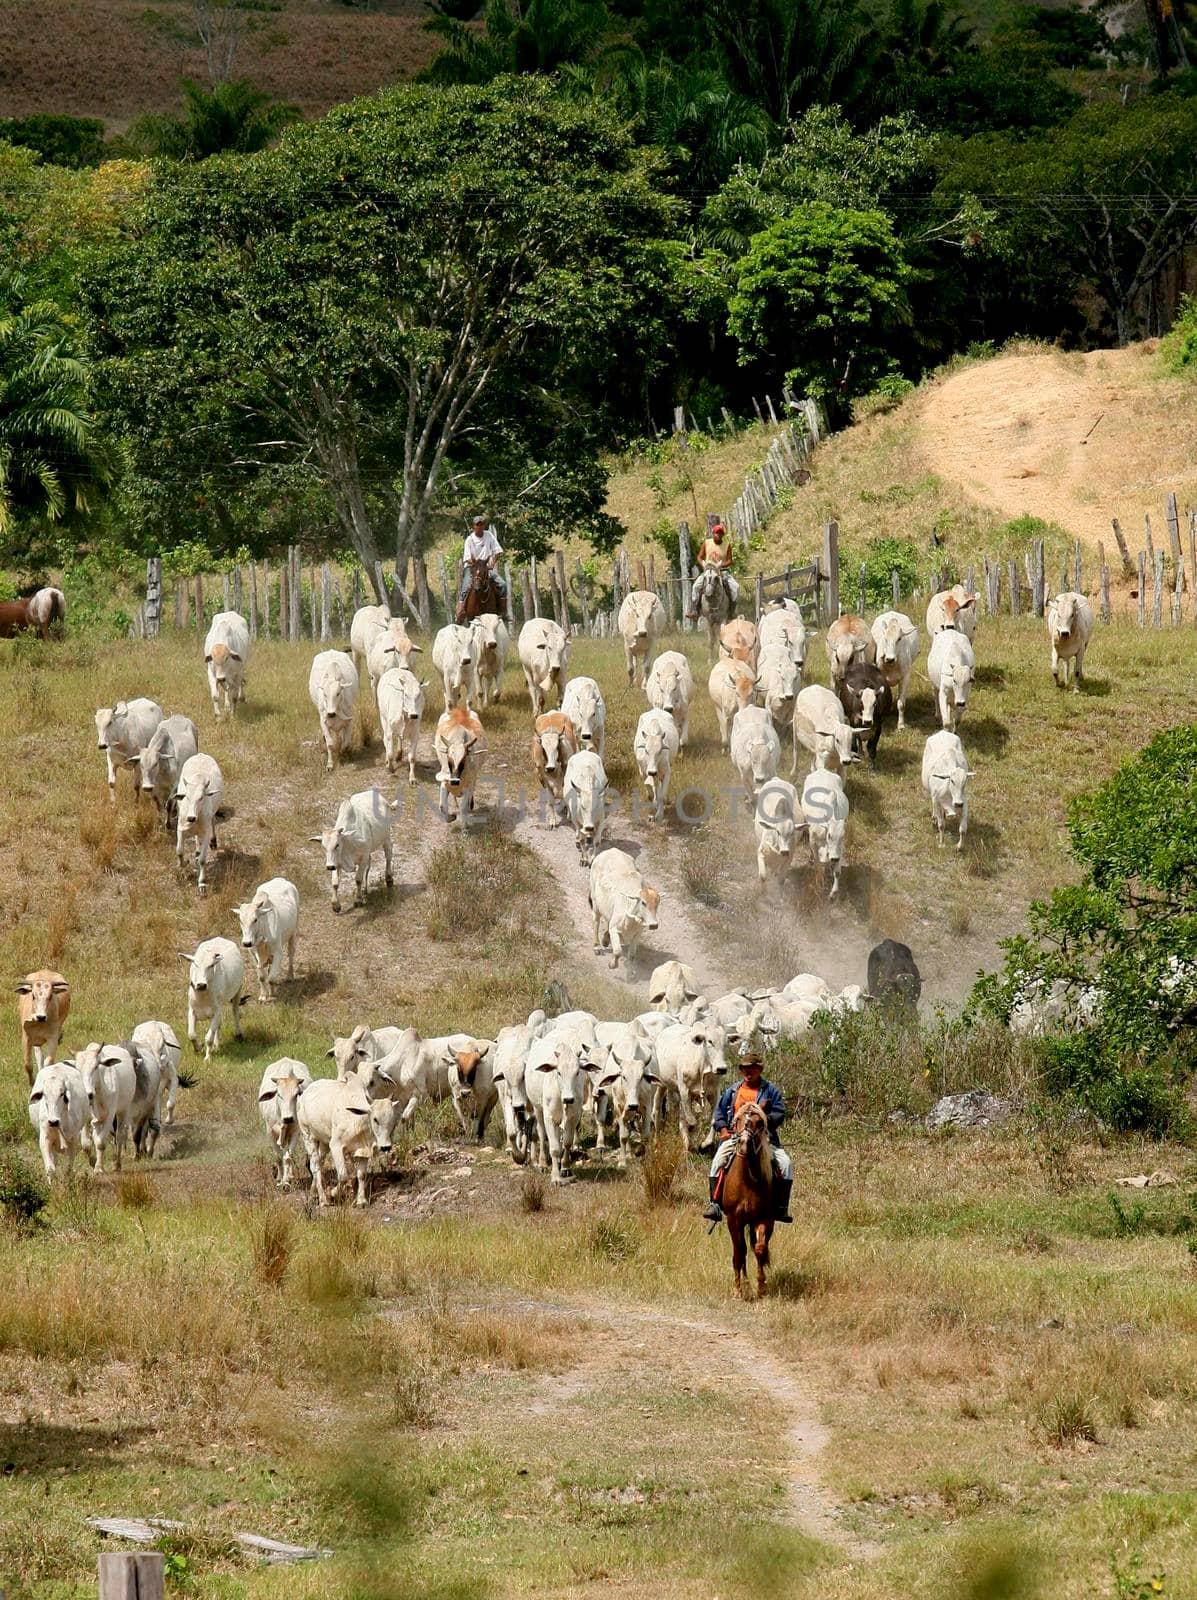 pau brazil, bahia / brazil - April 15, 2012: Cattle breeding is seen on farm in the countryside of Pau Brazil.